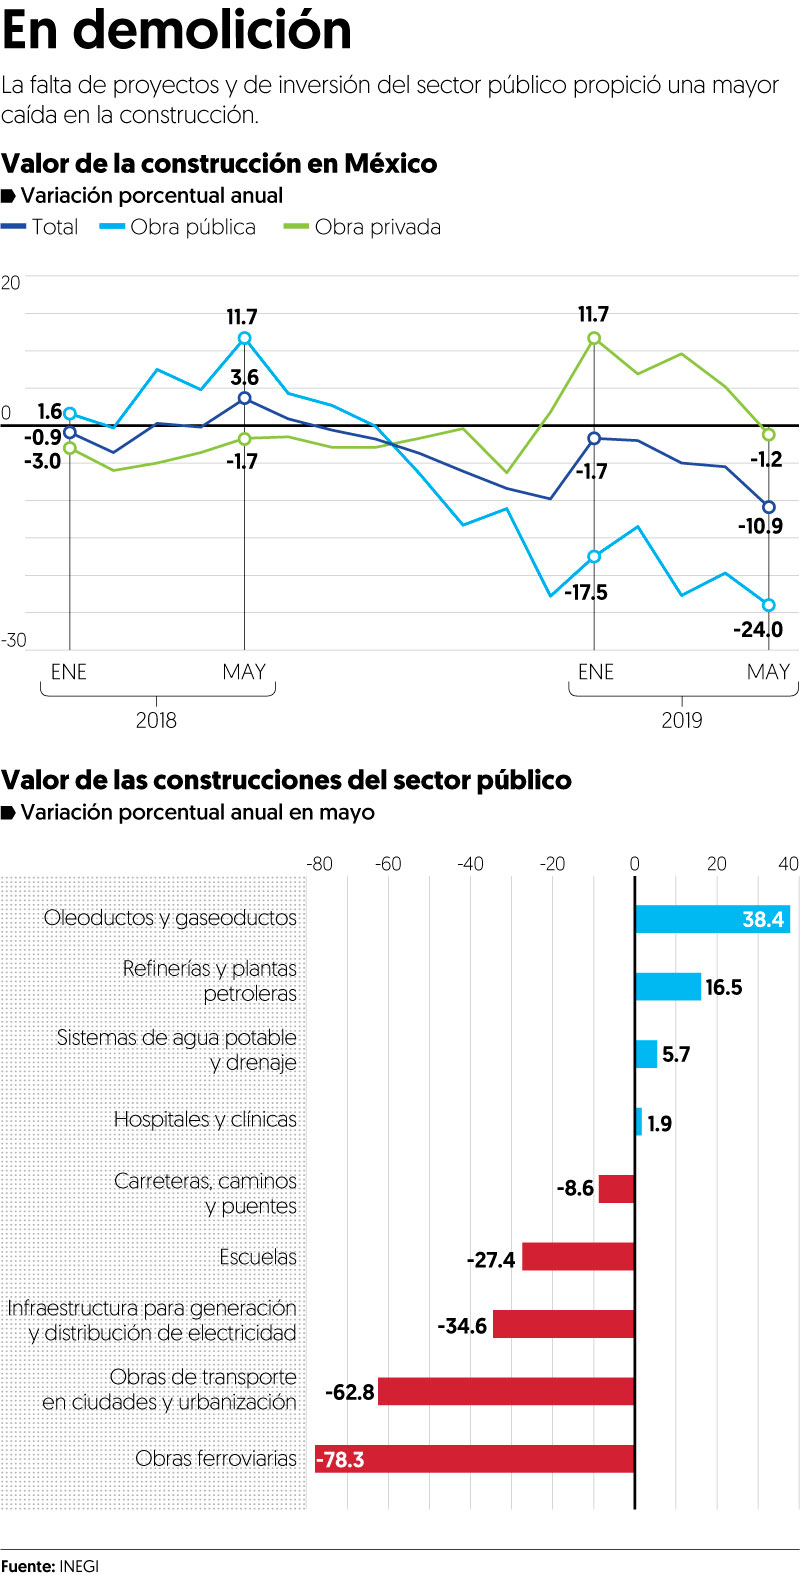 Falta de obras públicas pega al sector de la construcción